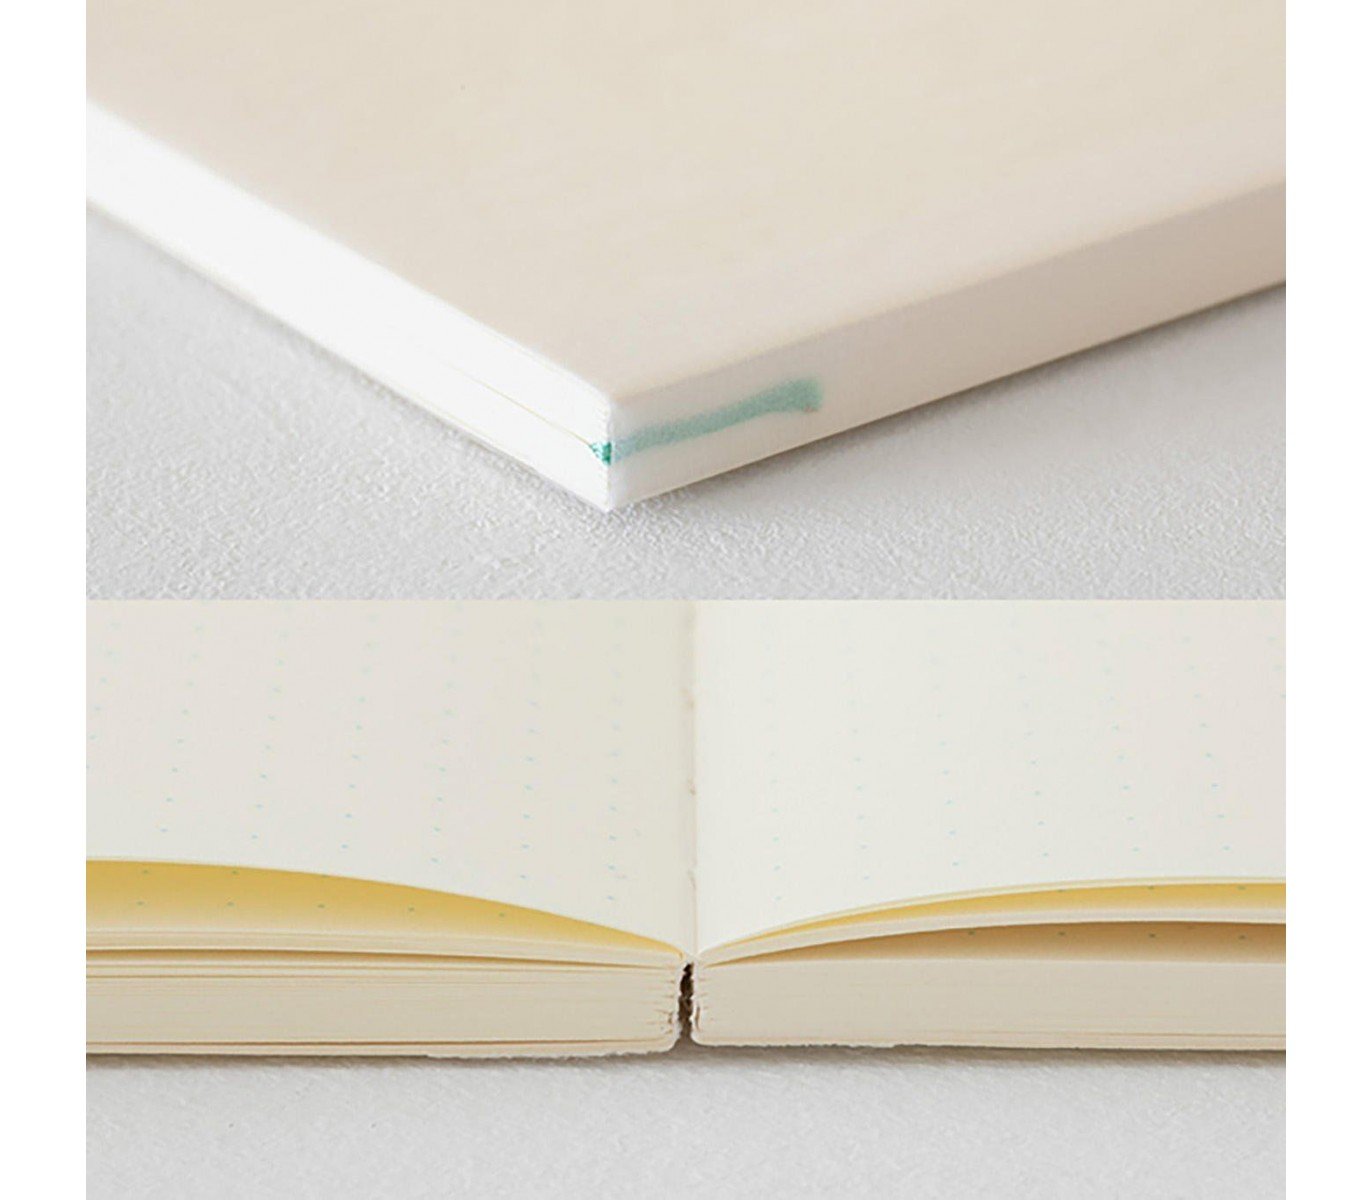 Midori A5 Notebook Journal, Dot Grid